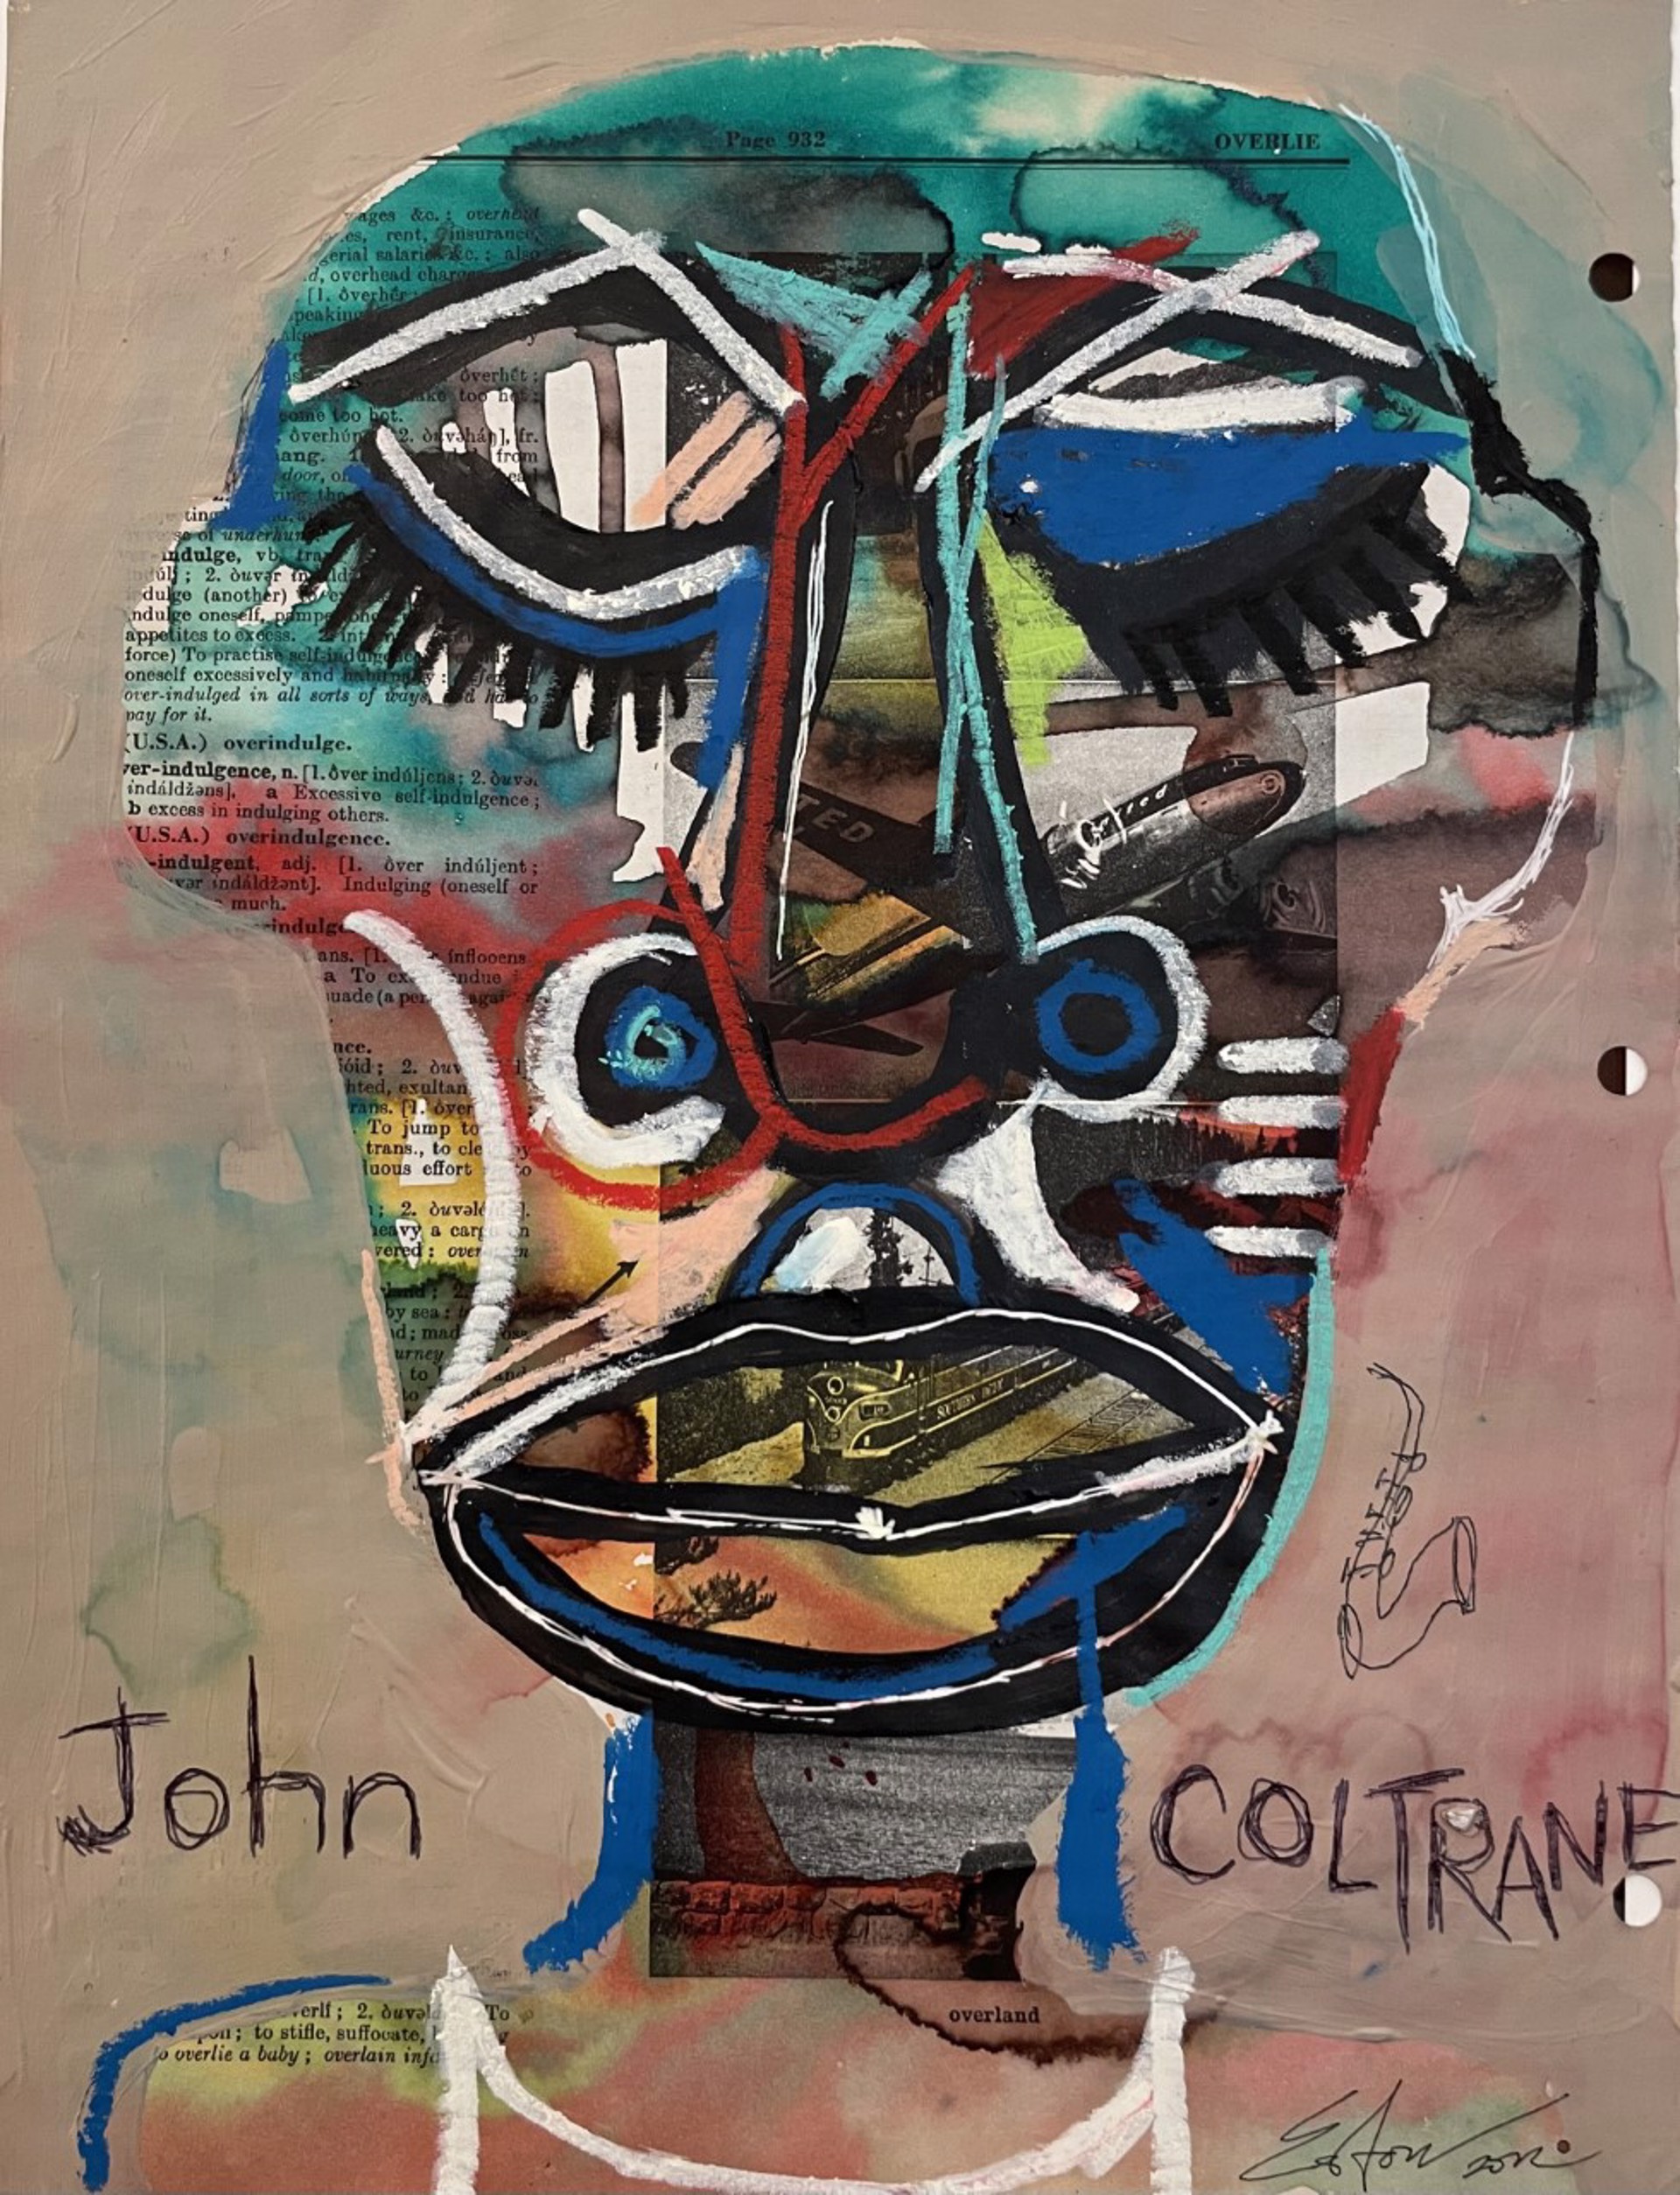 "John Coltrane" by Easton Davy